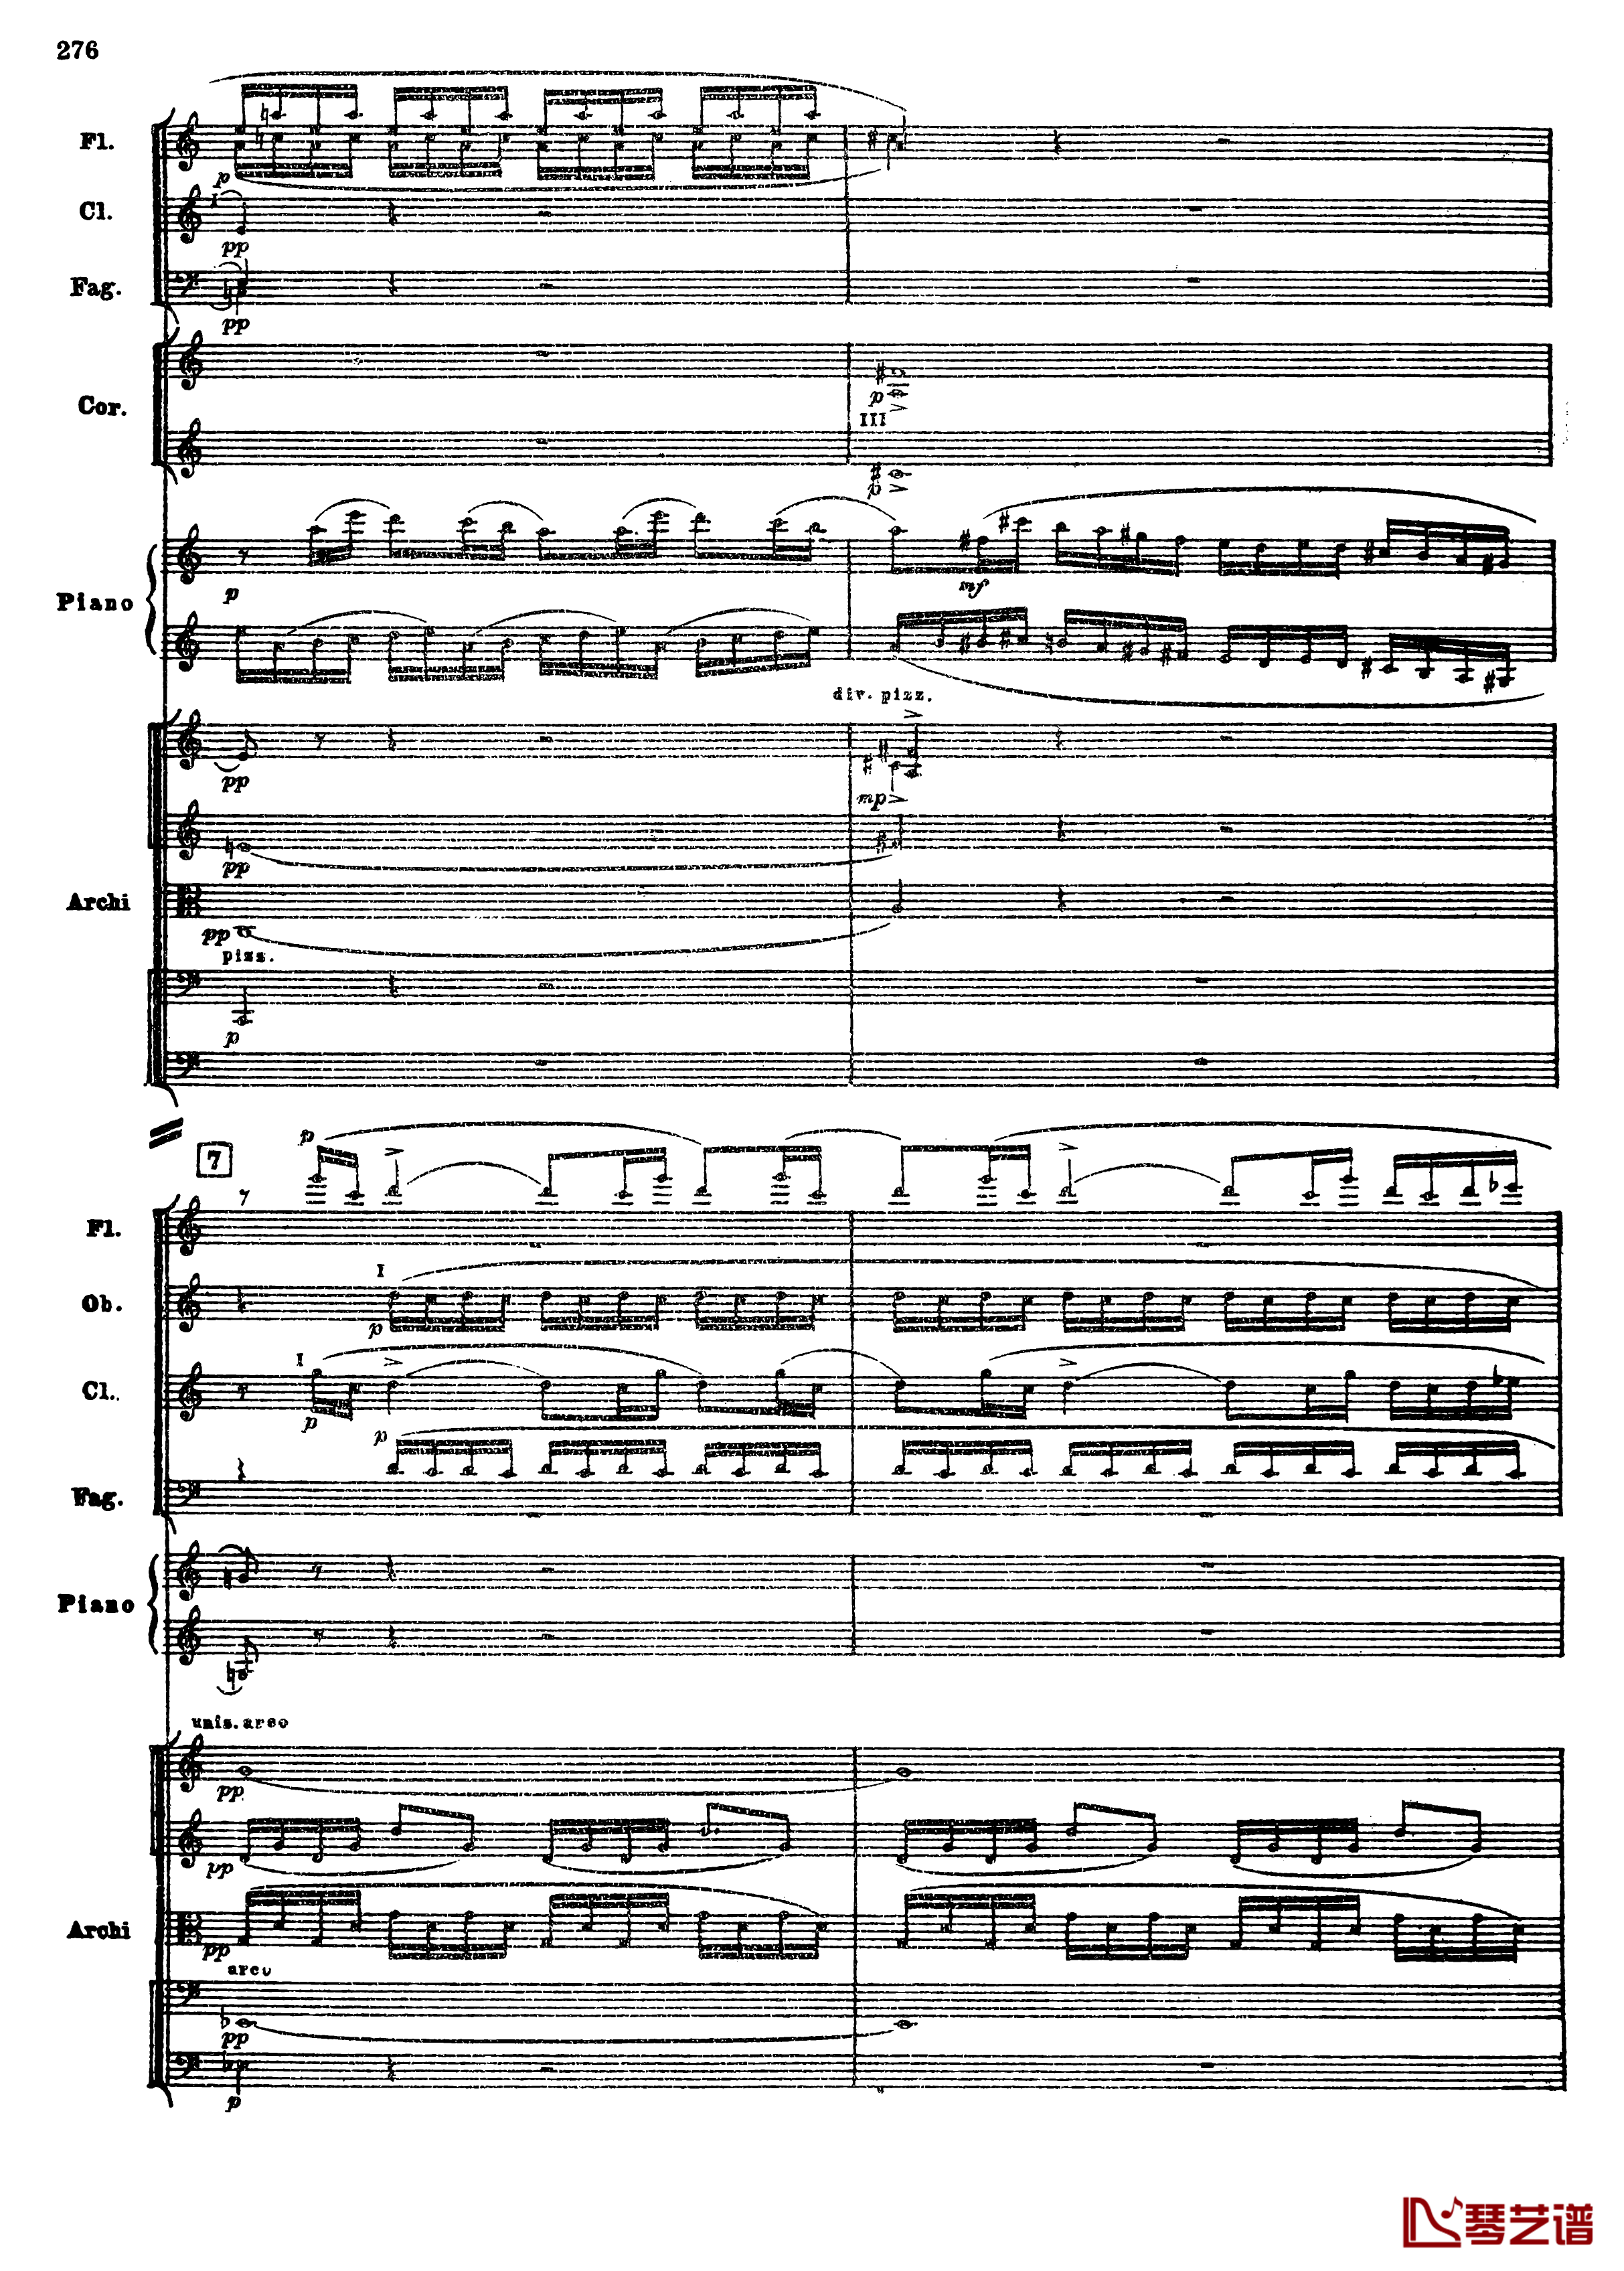 普罗科菲耶夫第三钢琴协奏曲钢琴谱-总谱-普罗科非耶夫8